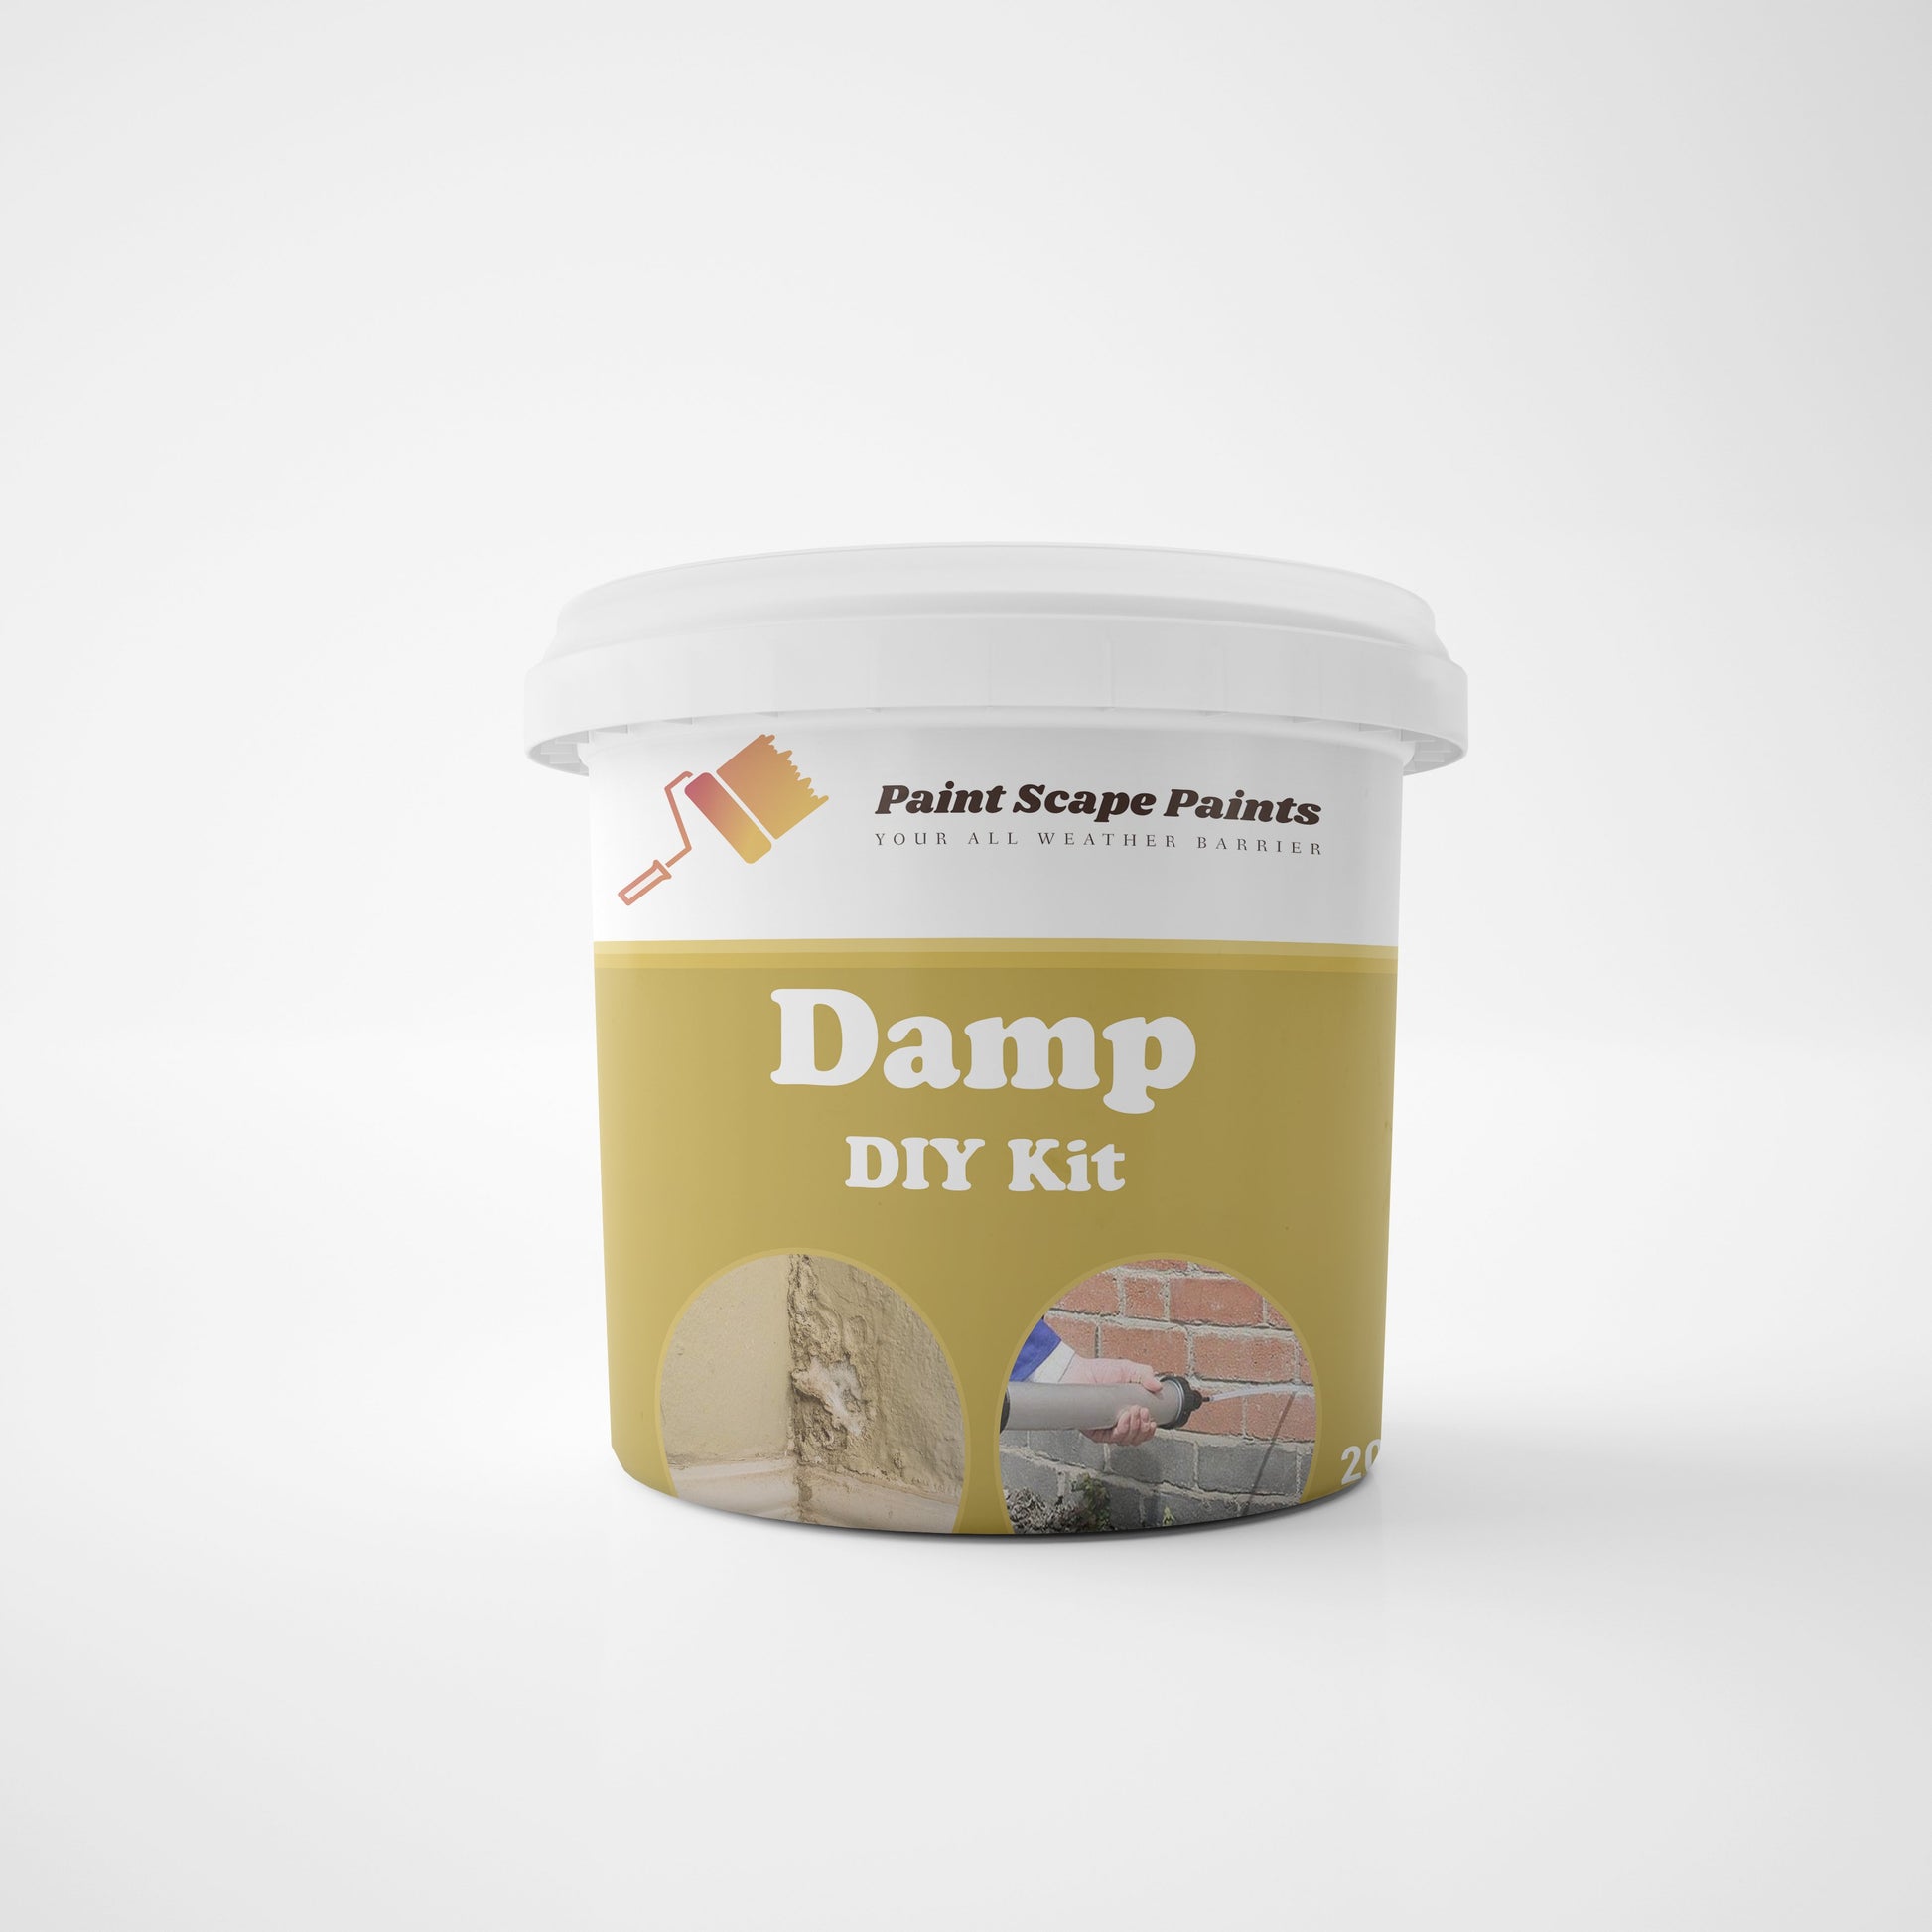 Damp DIY Kit Paint Scape Paints